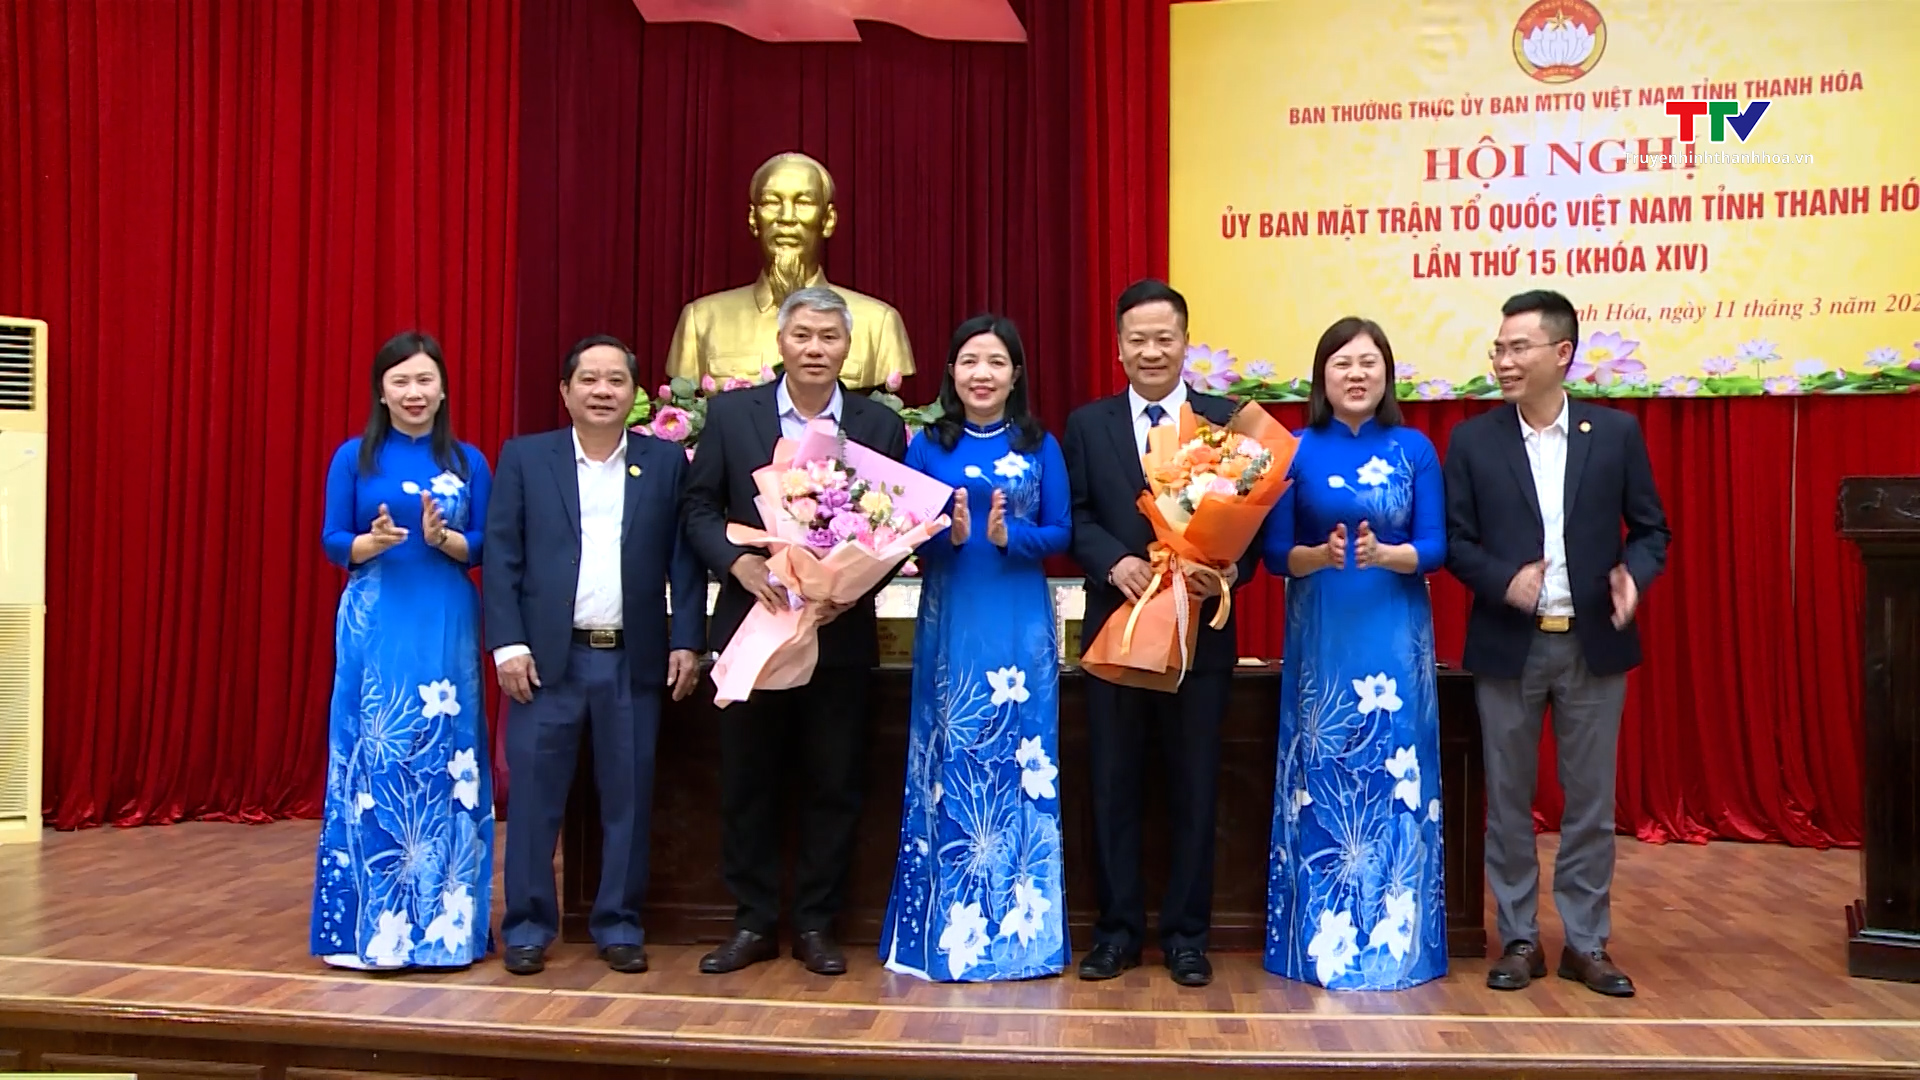 Hội nghị Ủy ban Mặt trận Tổ quốc Việt Nam tỉnh Thanh Hóa lần thứ 15 (khóa XIV)- Ảnh 2.